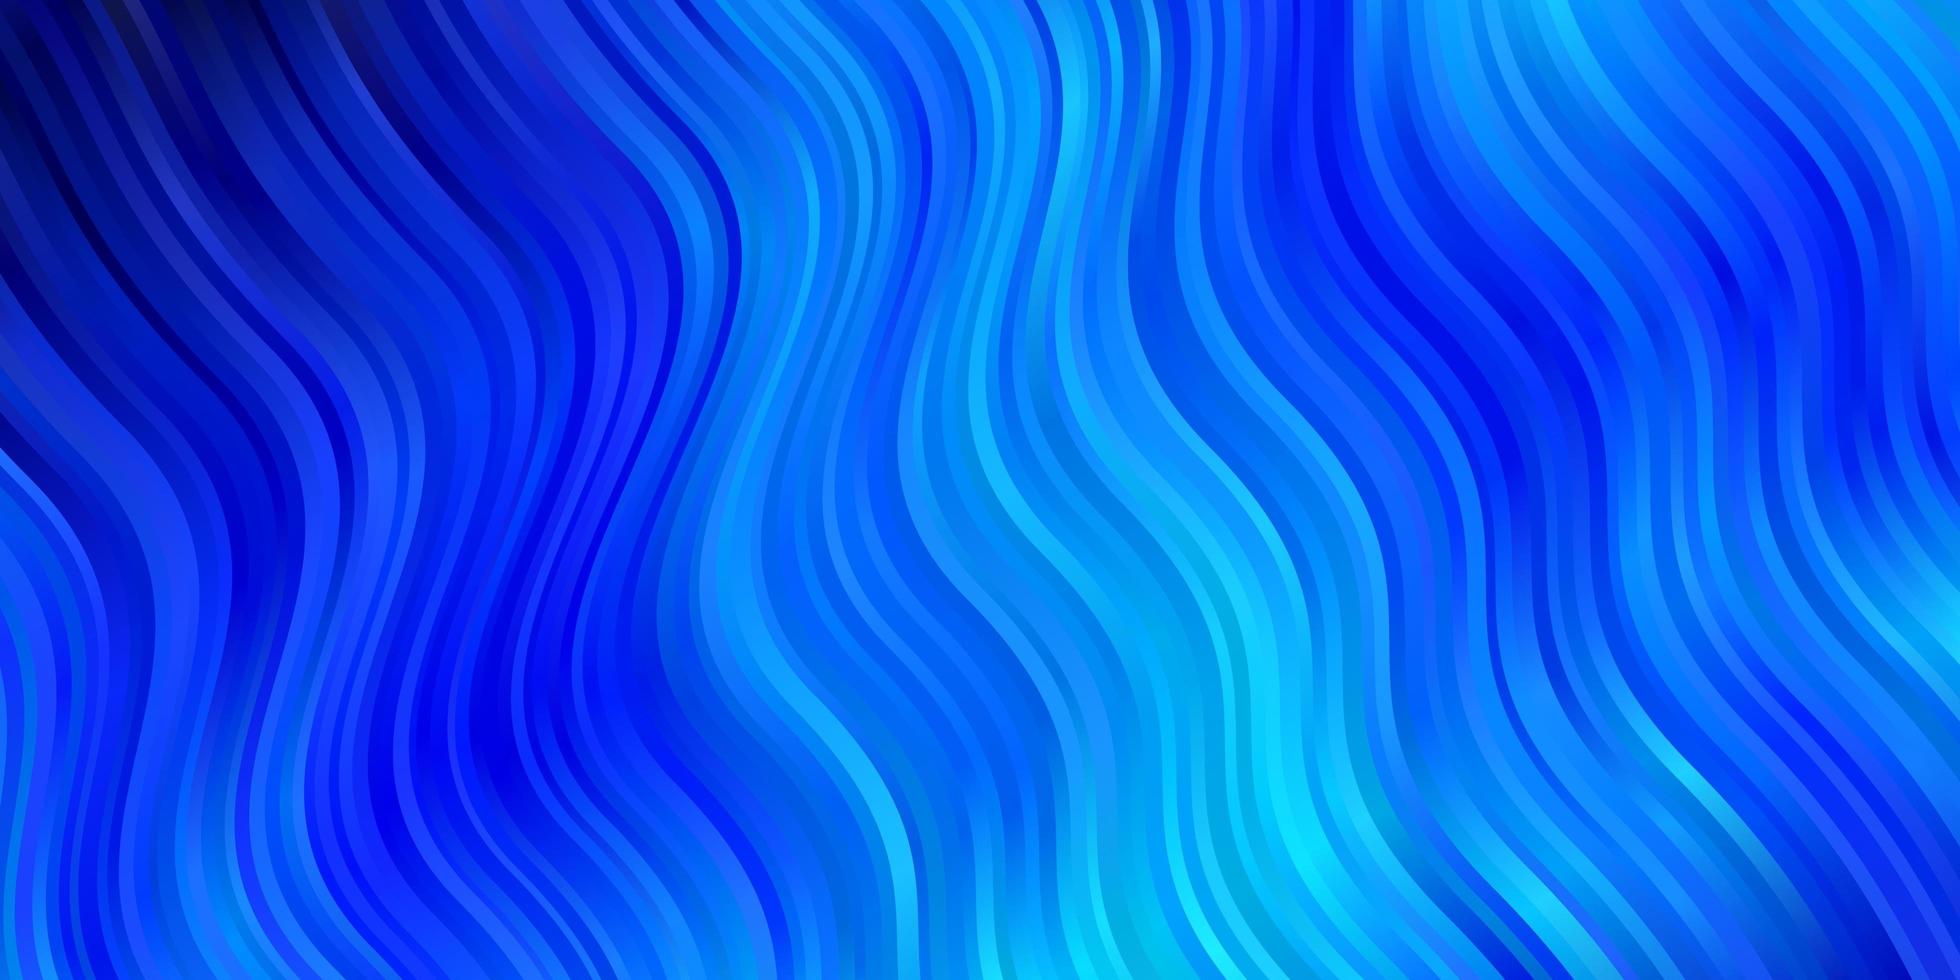 ljusblå vektor bakgrund med böjda linjer